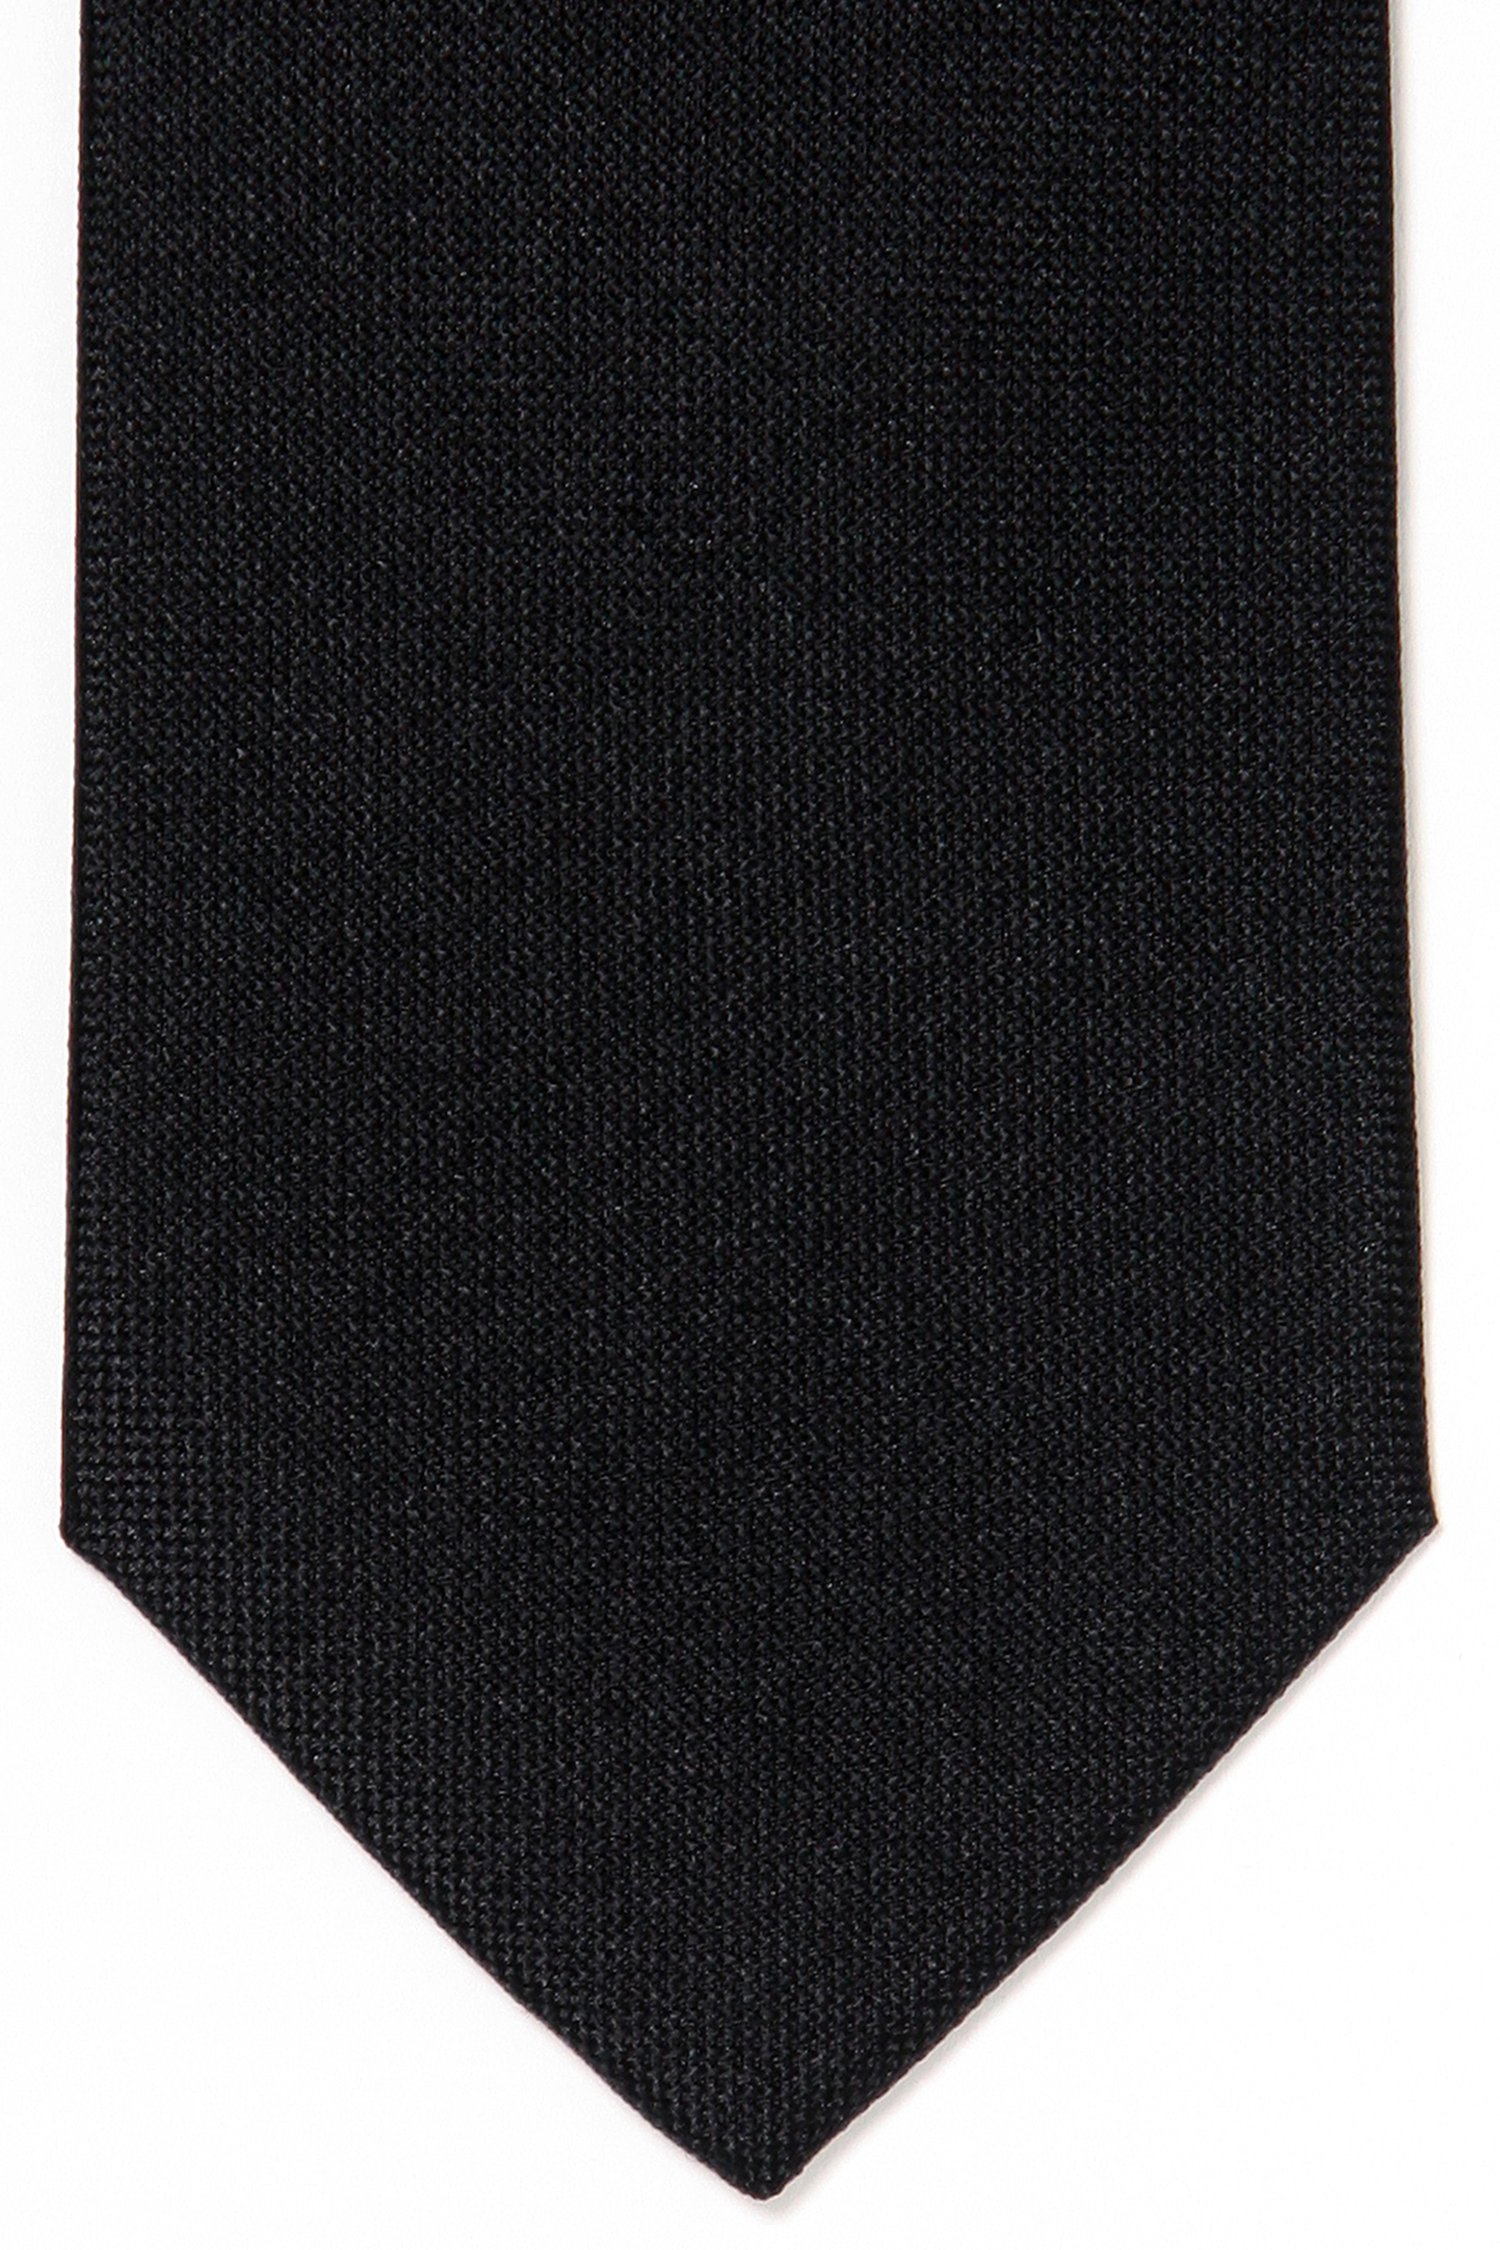 Cravate noire en soie de Michaelis pour Hommes